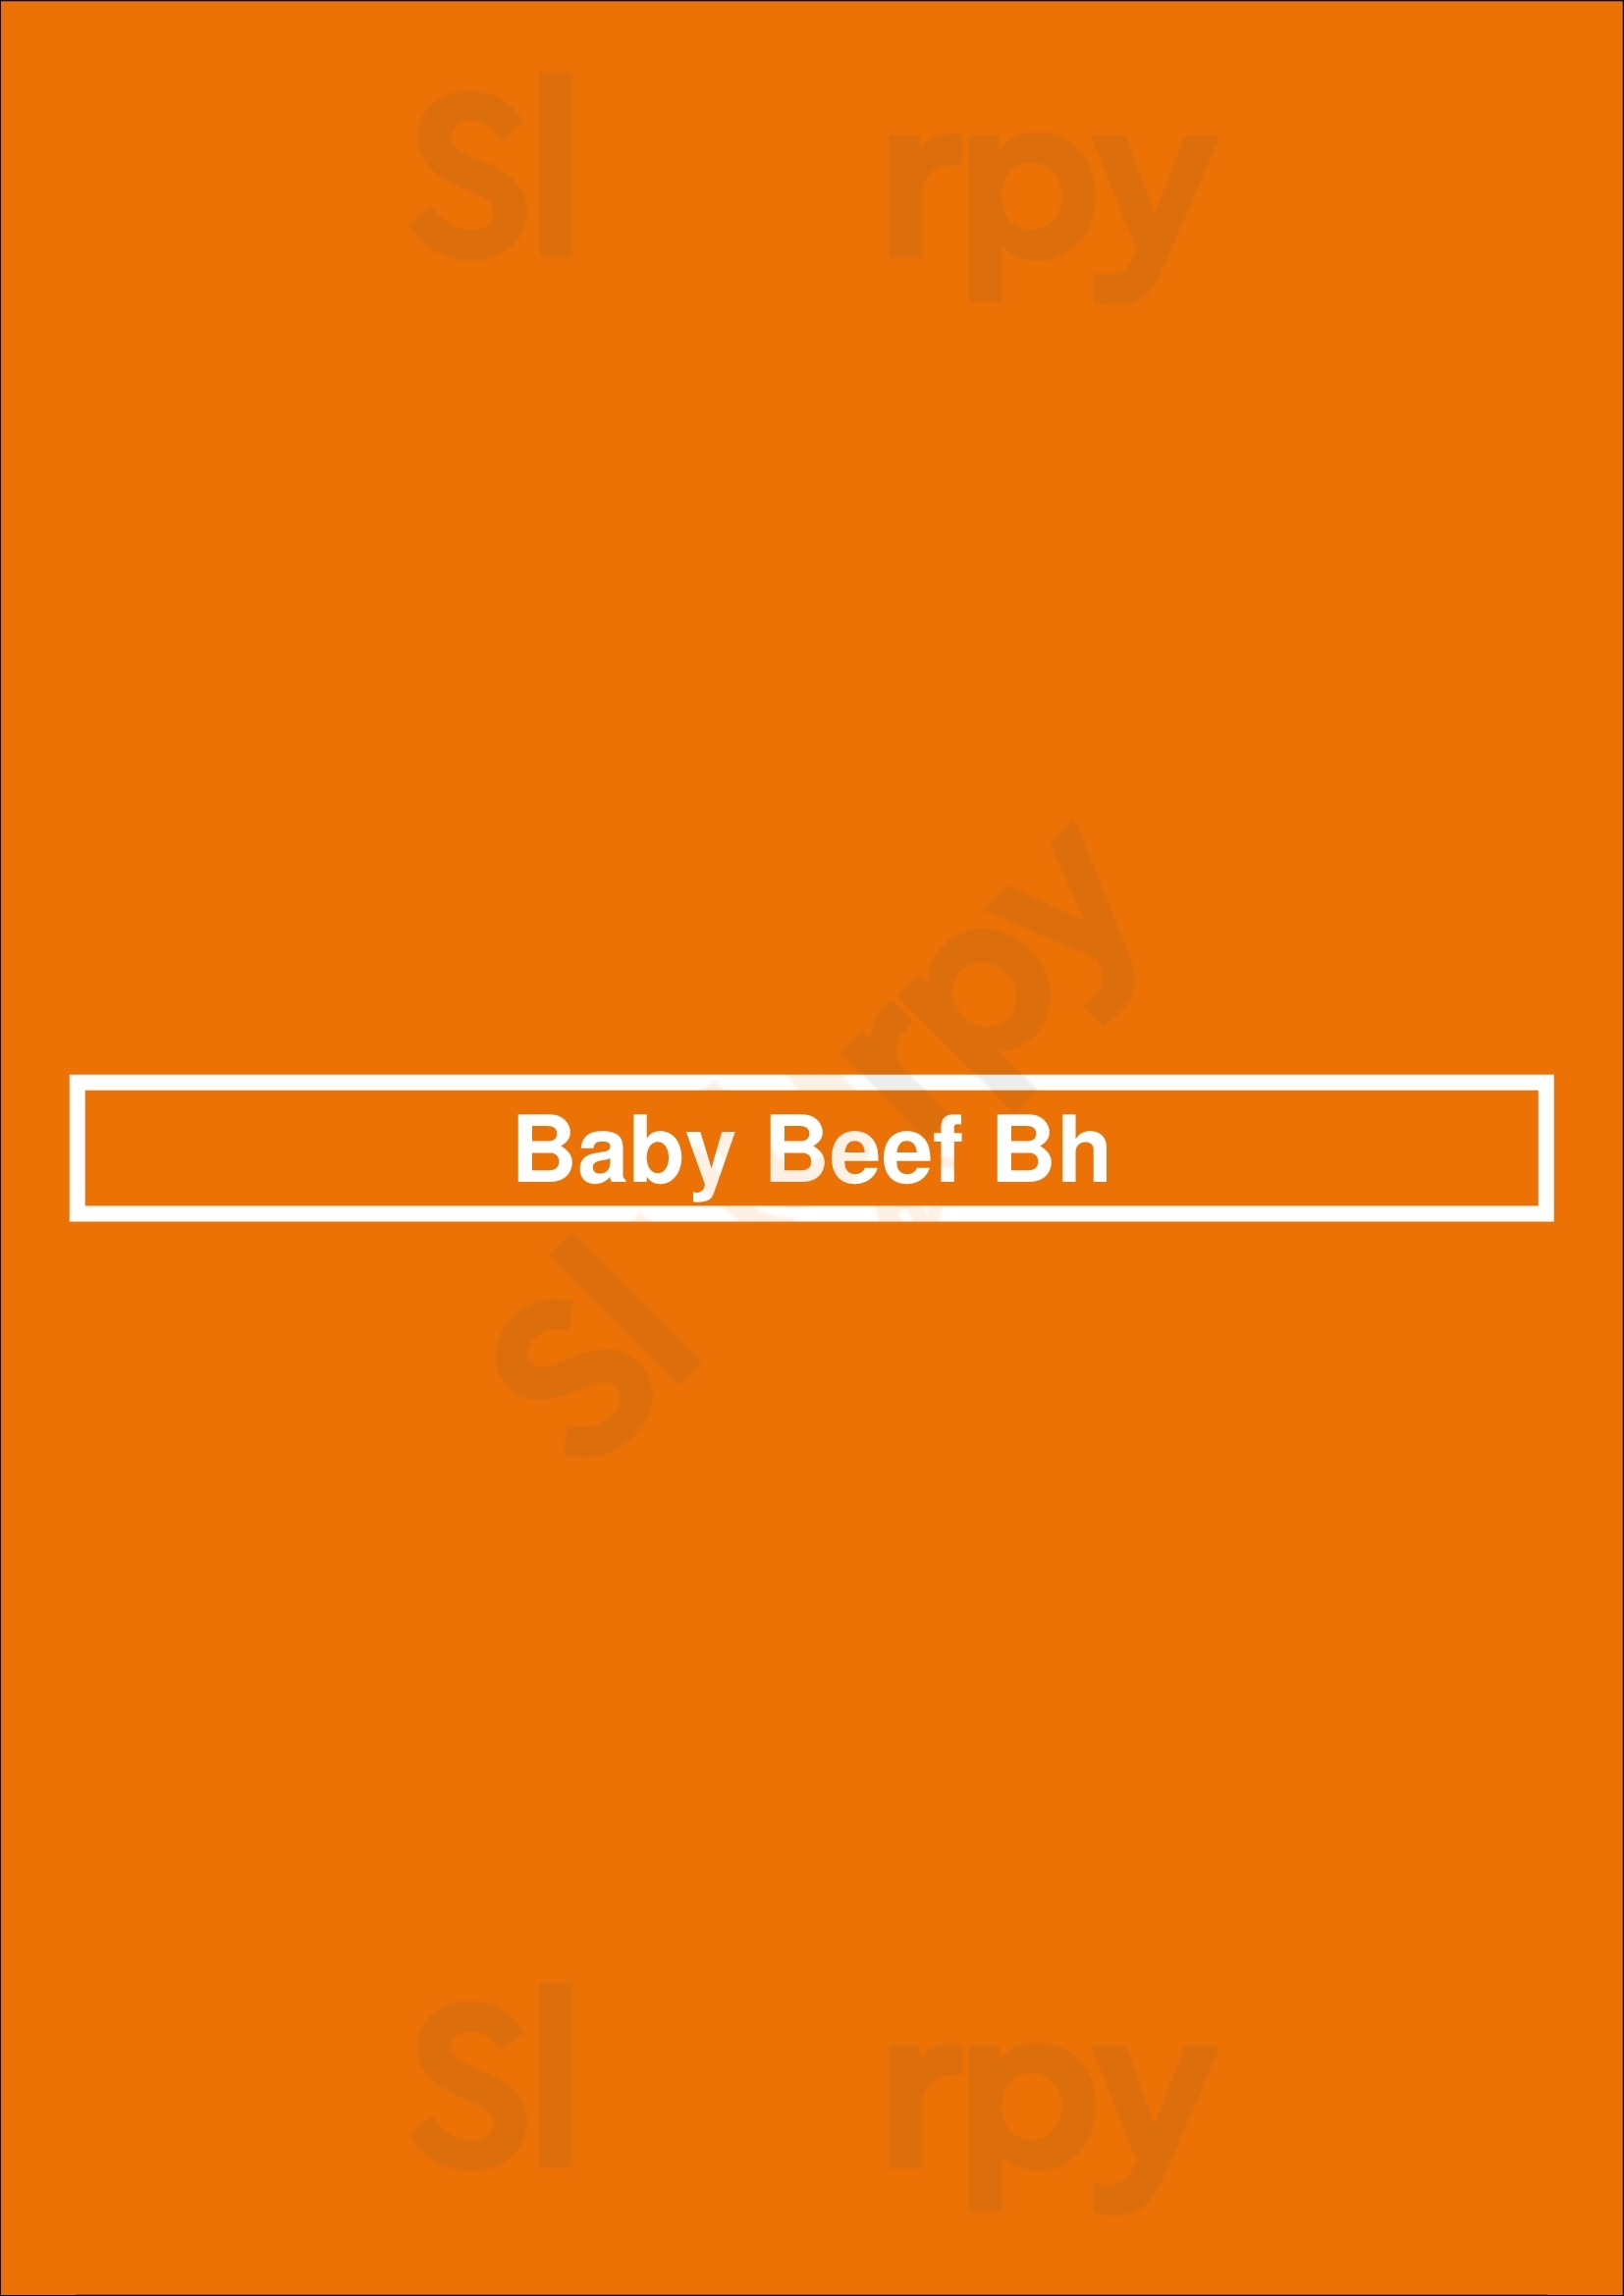 Baby Beef Bh Belo Horizonte Menu - 1